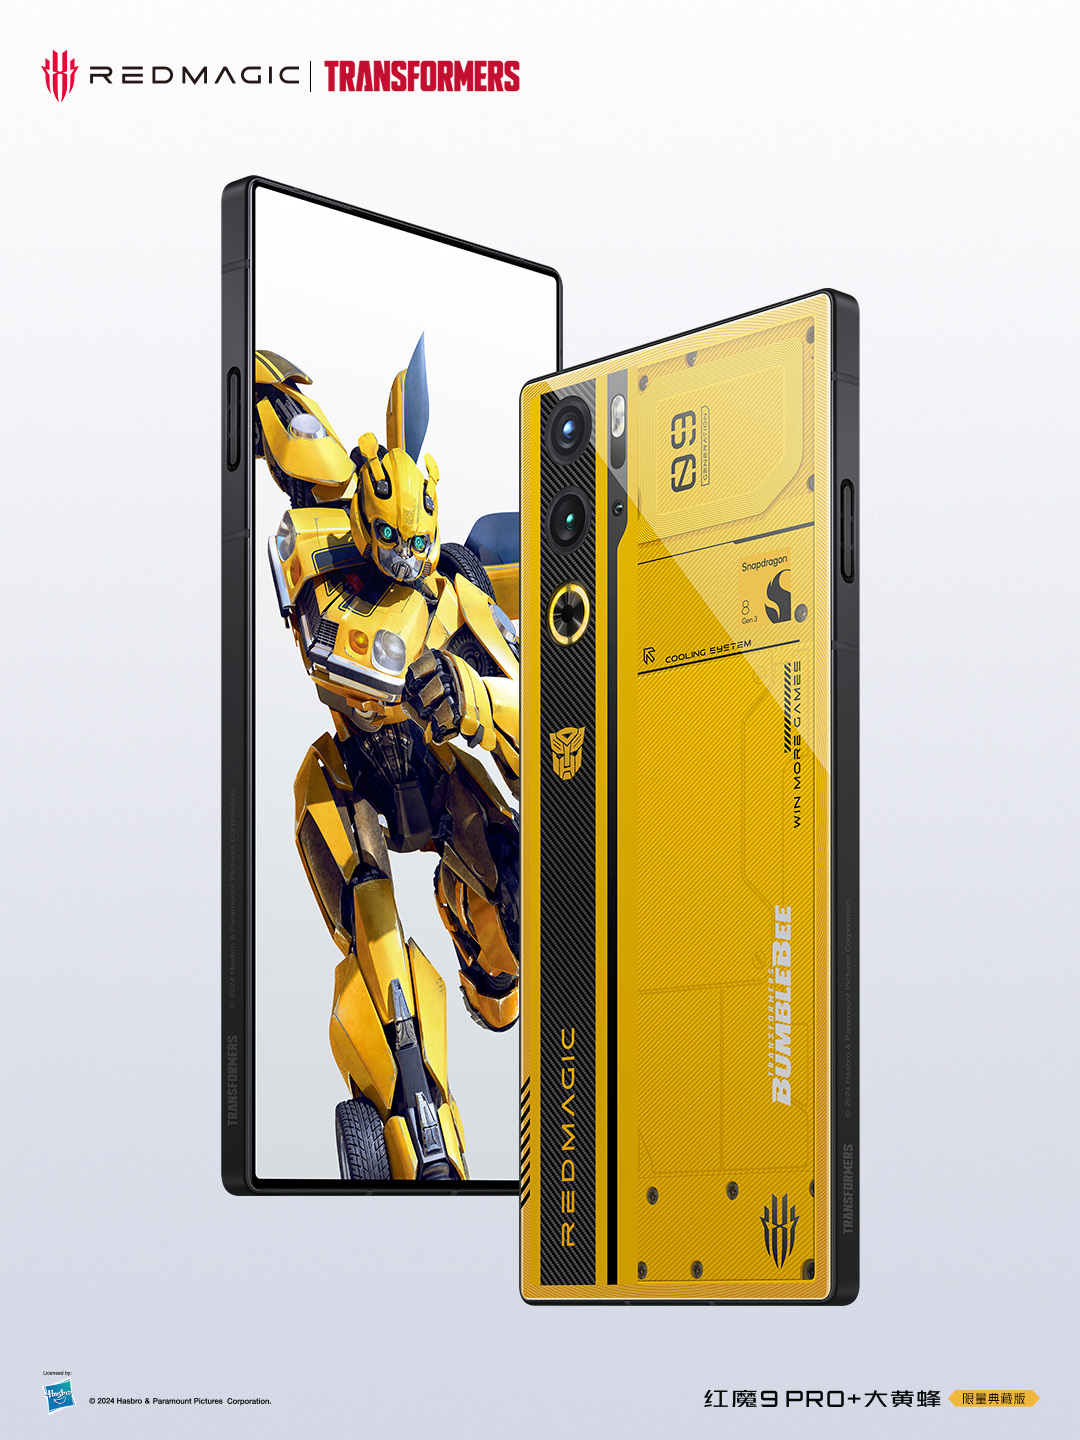 6499 元，红魔 9 Pro + 变形金刚大黄蜂限量版手机发布，深度定制配件